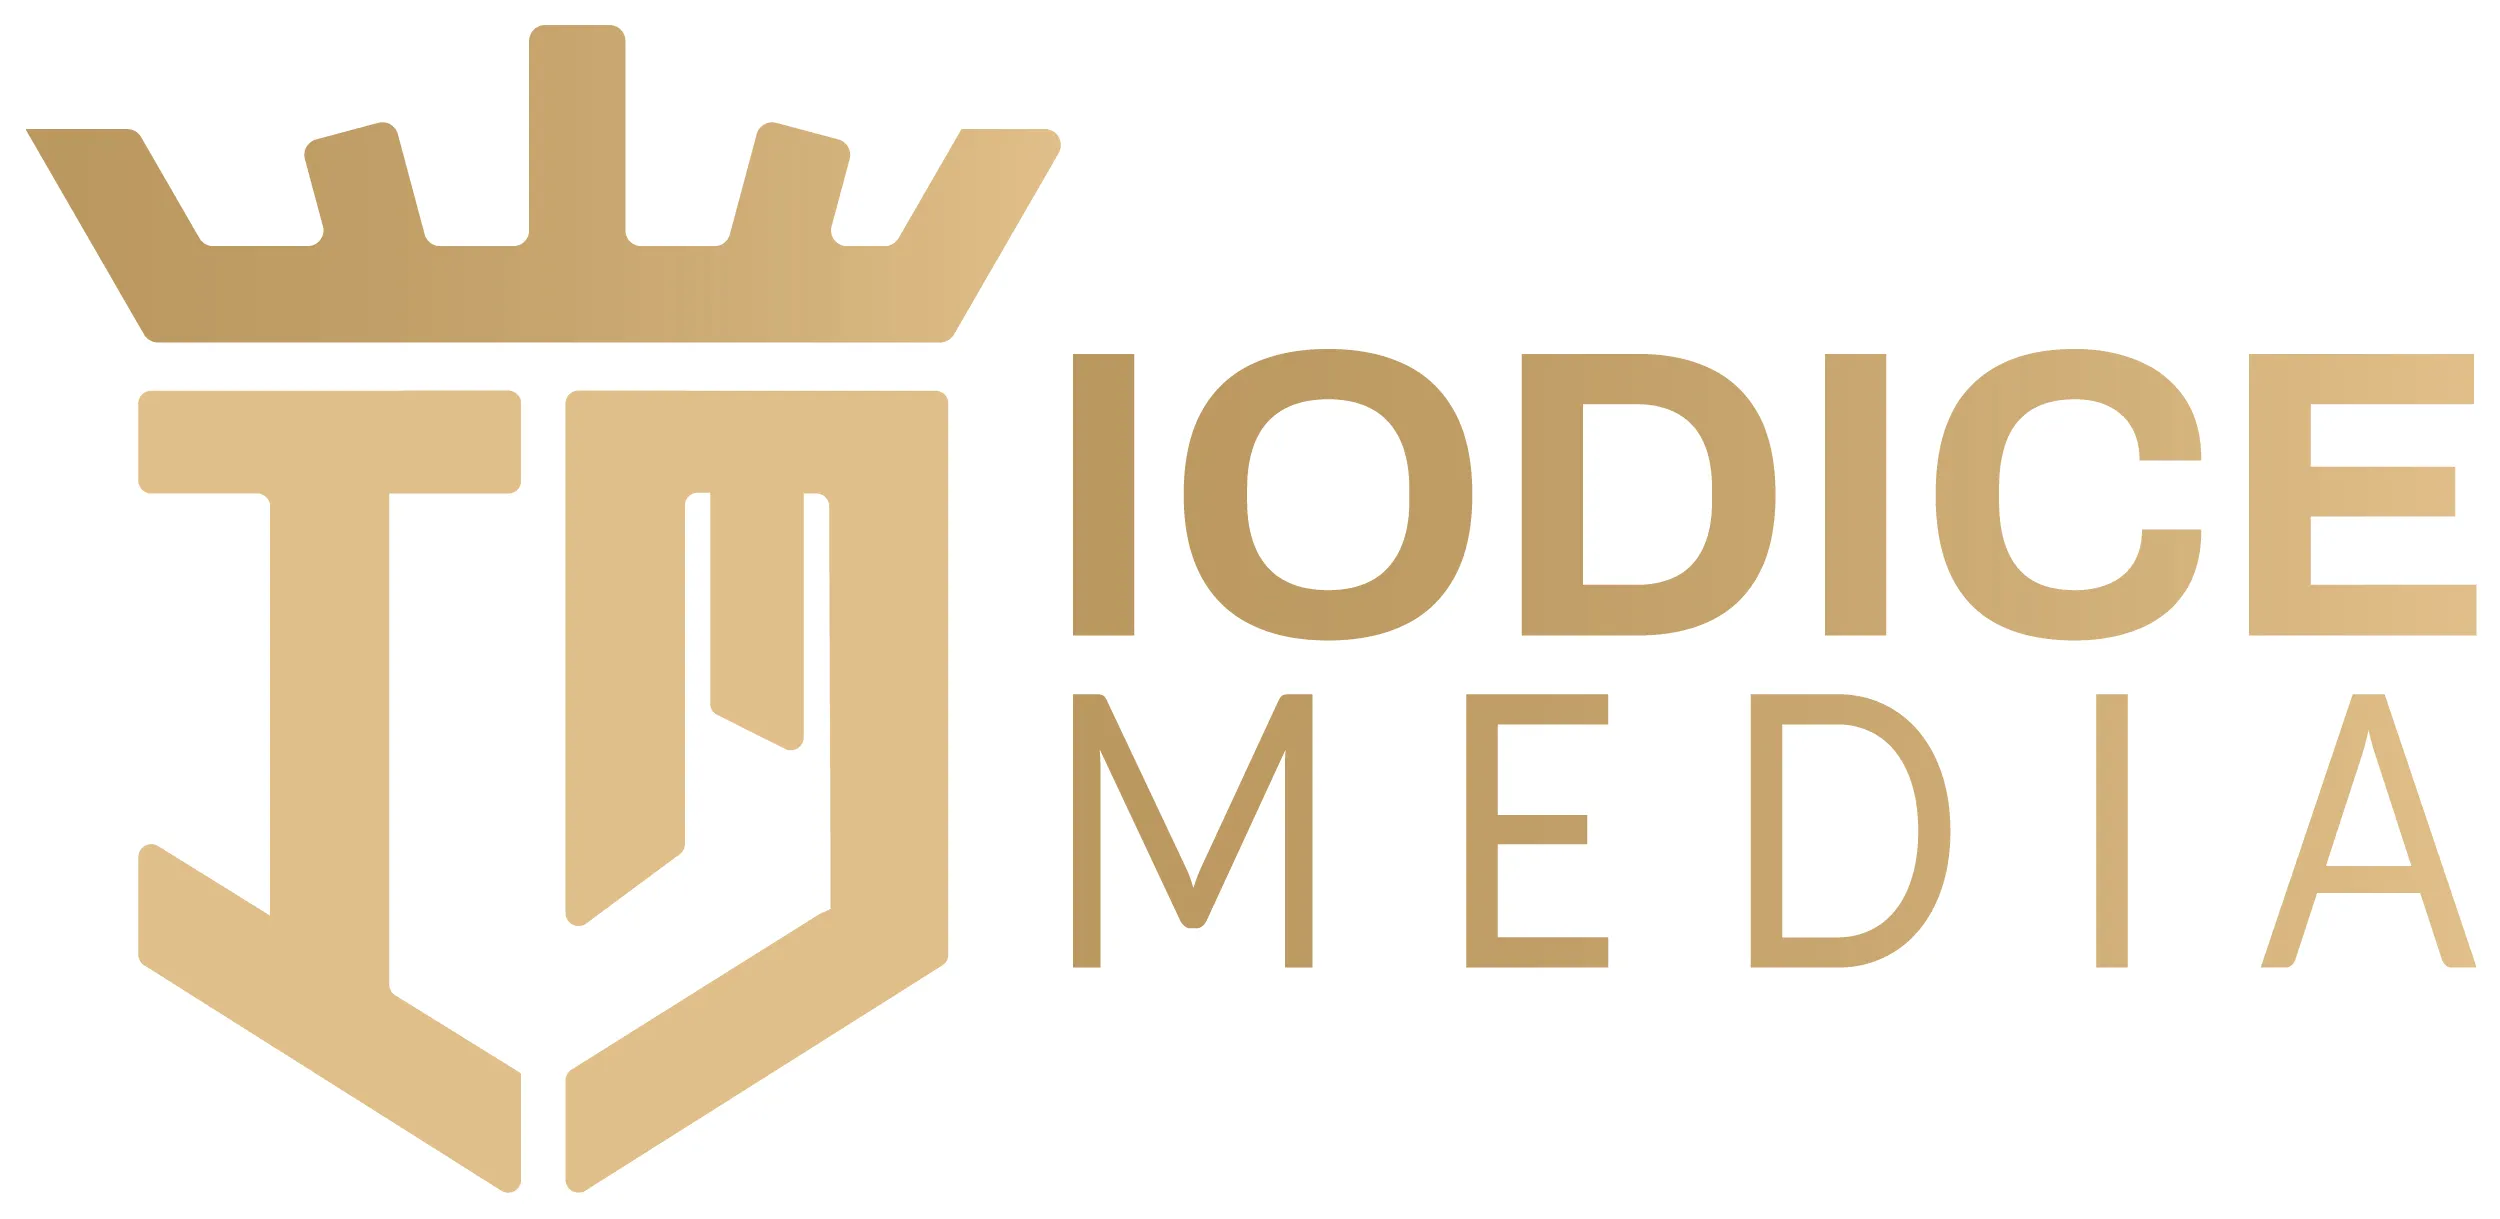 iodice media logo